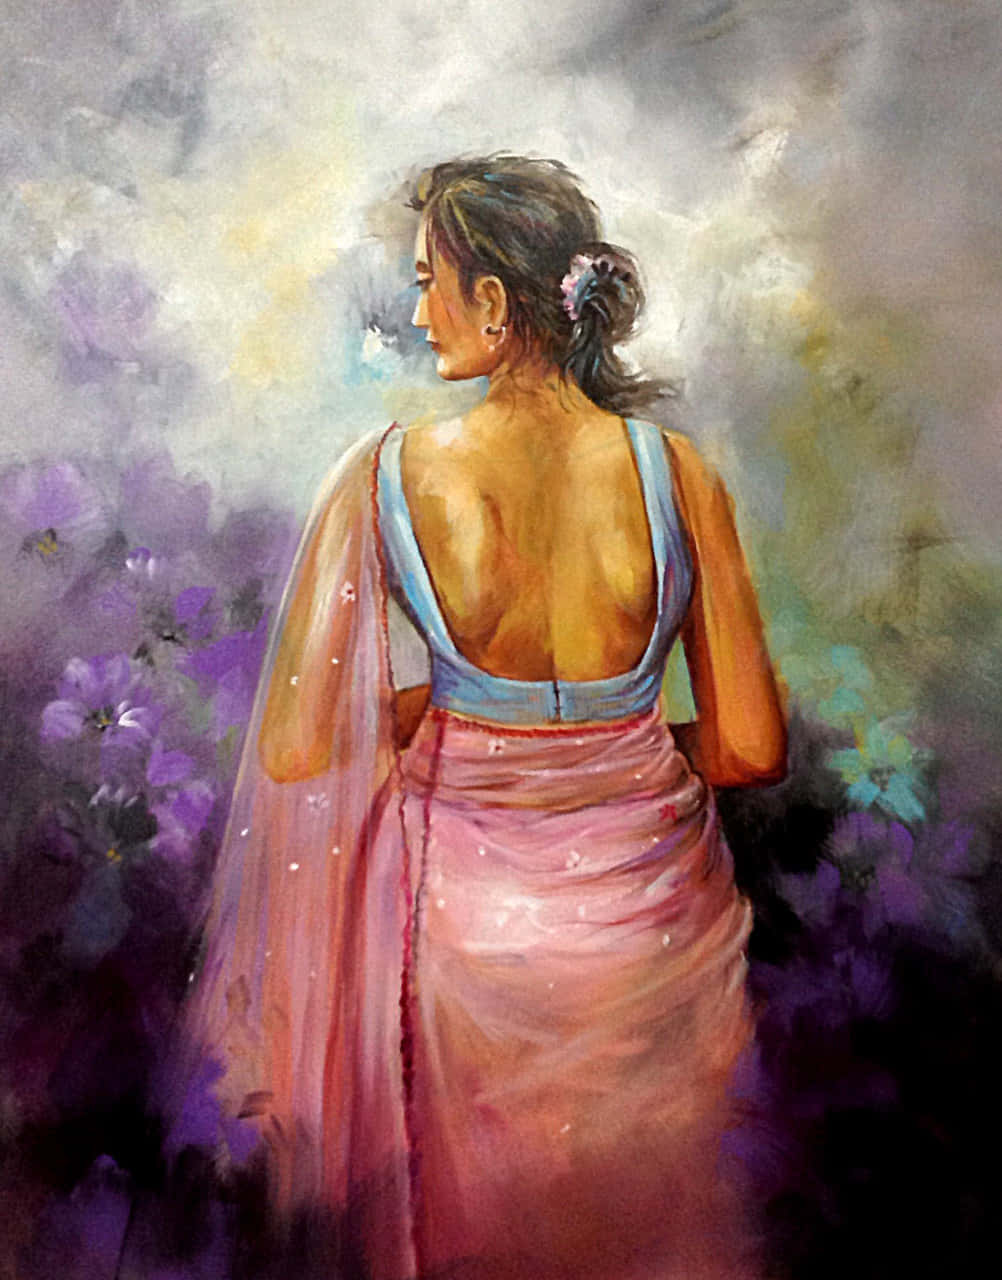 Enmålning Av En Kvinna I En Rosa Sari.